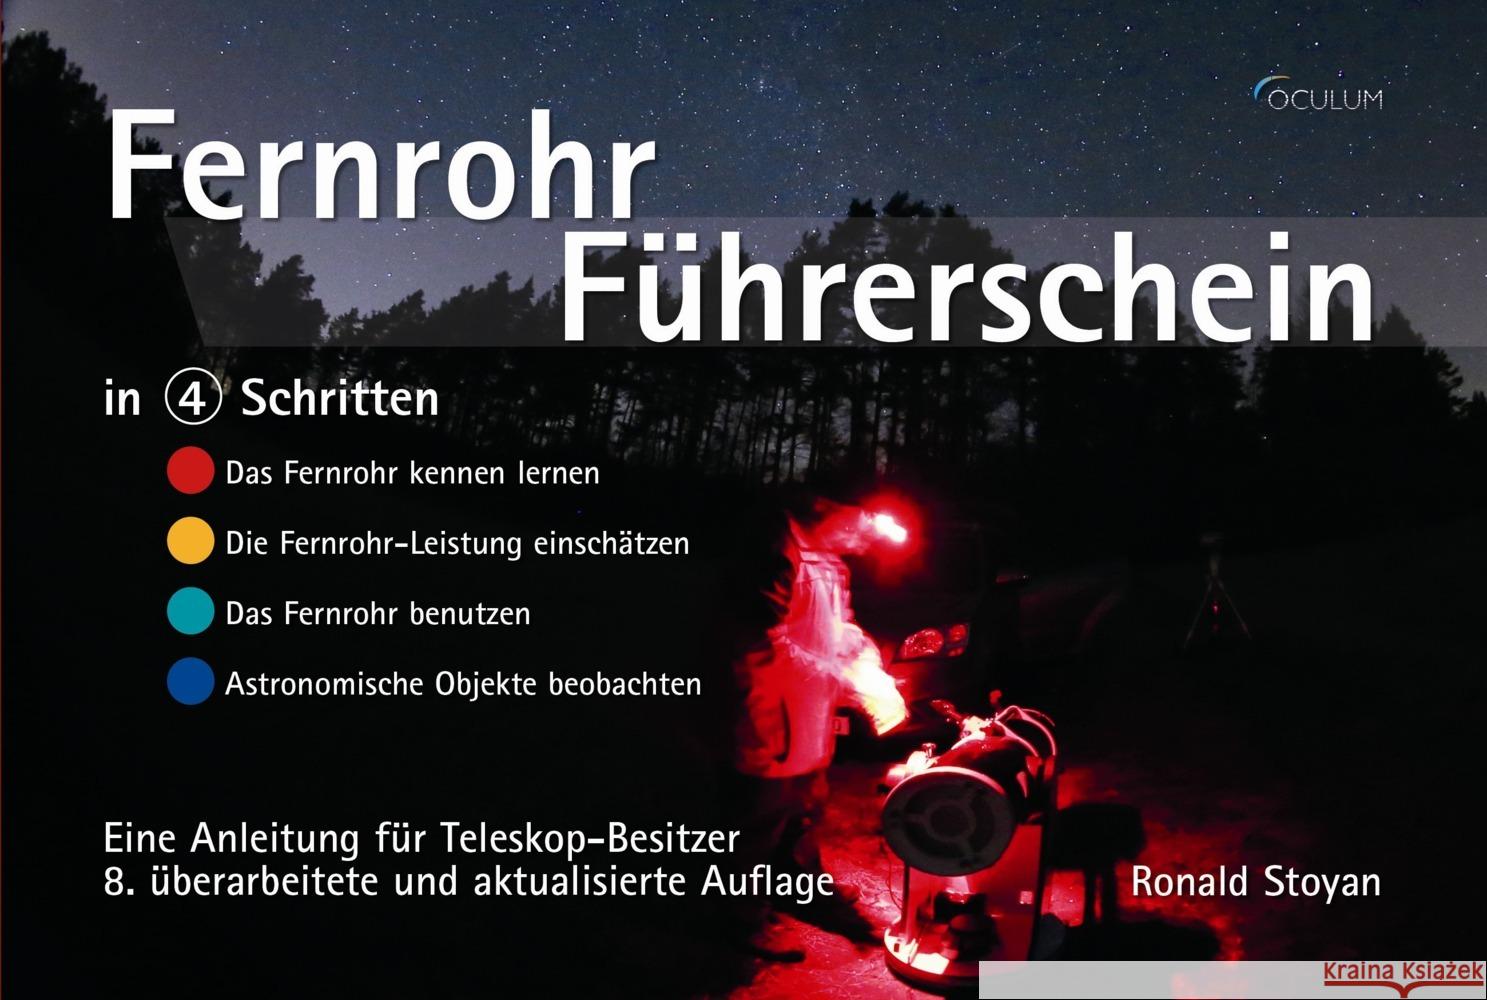 Fernrohr-Führerschein in 4 Schritten Stoyan, Ronald 9783938469972 Oculum - książka